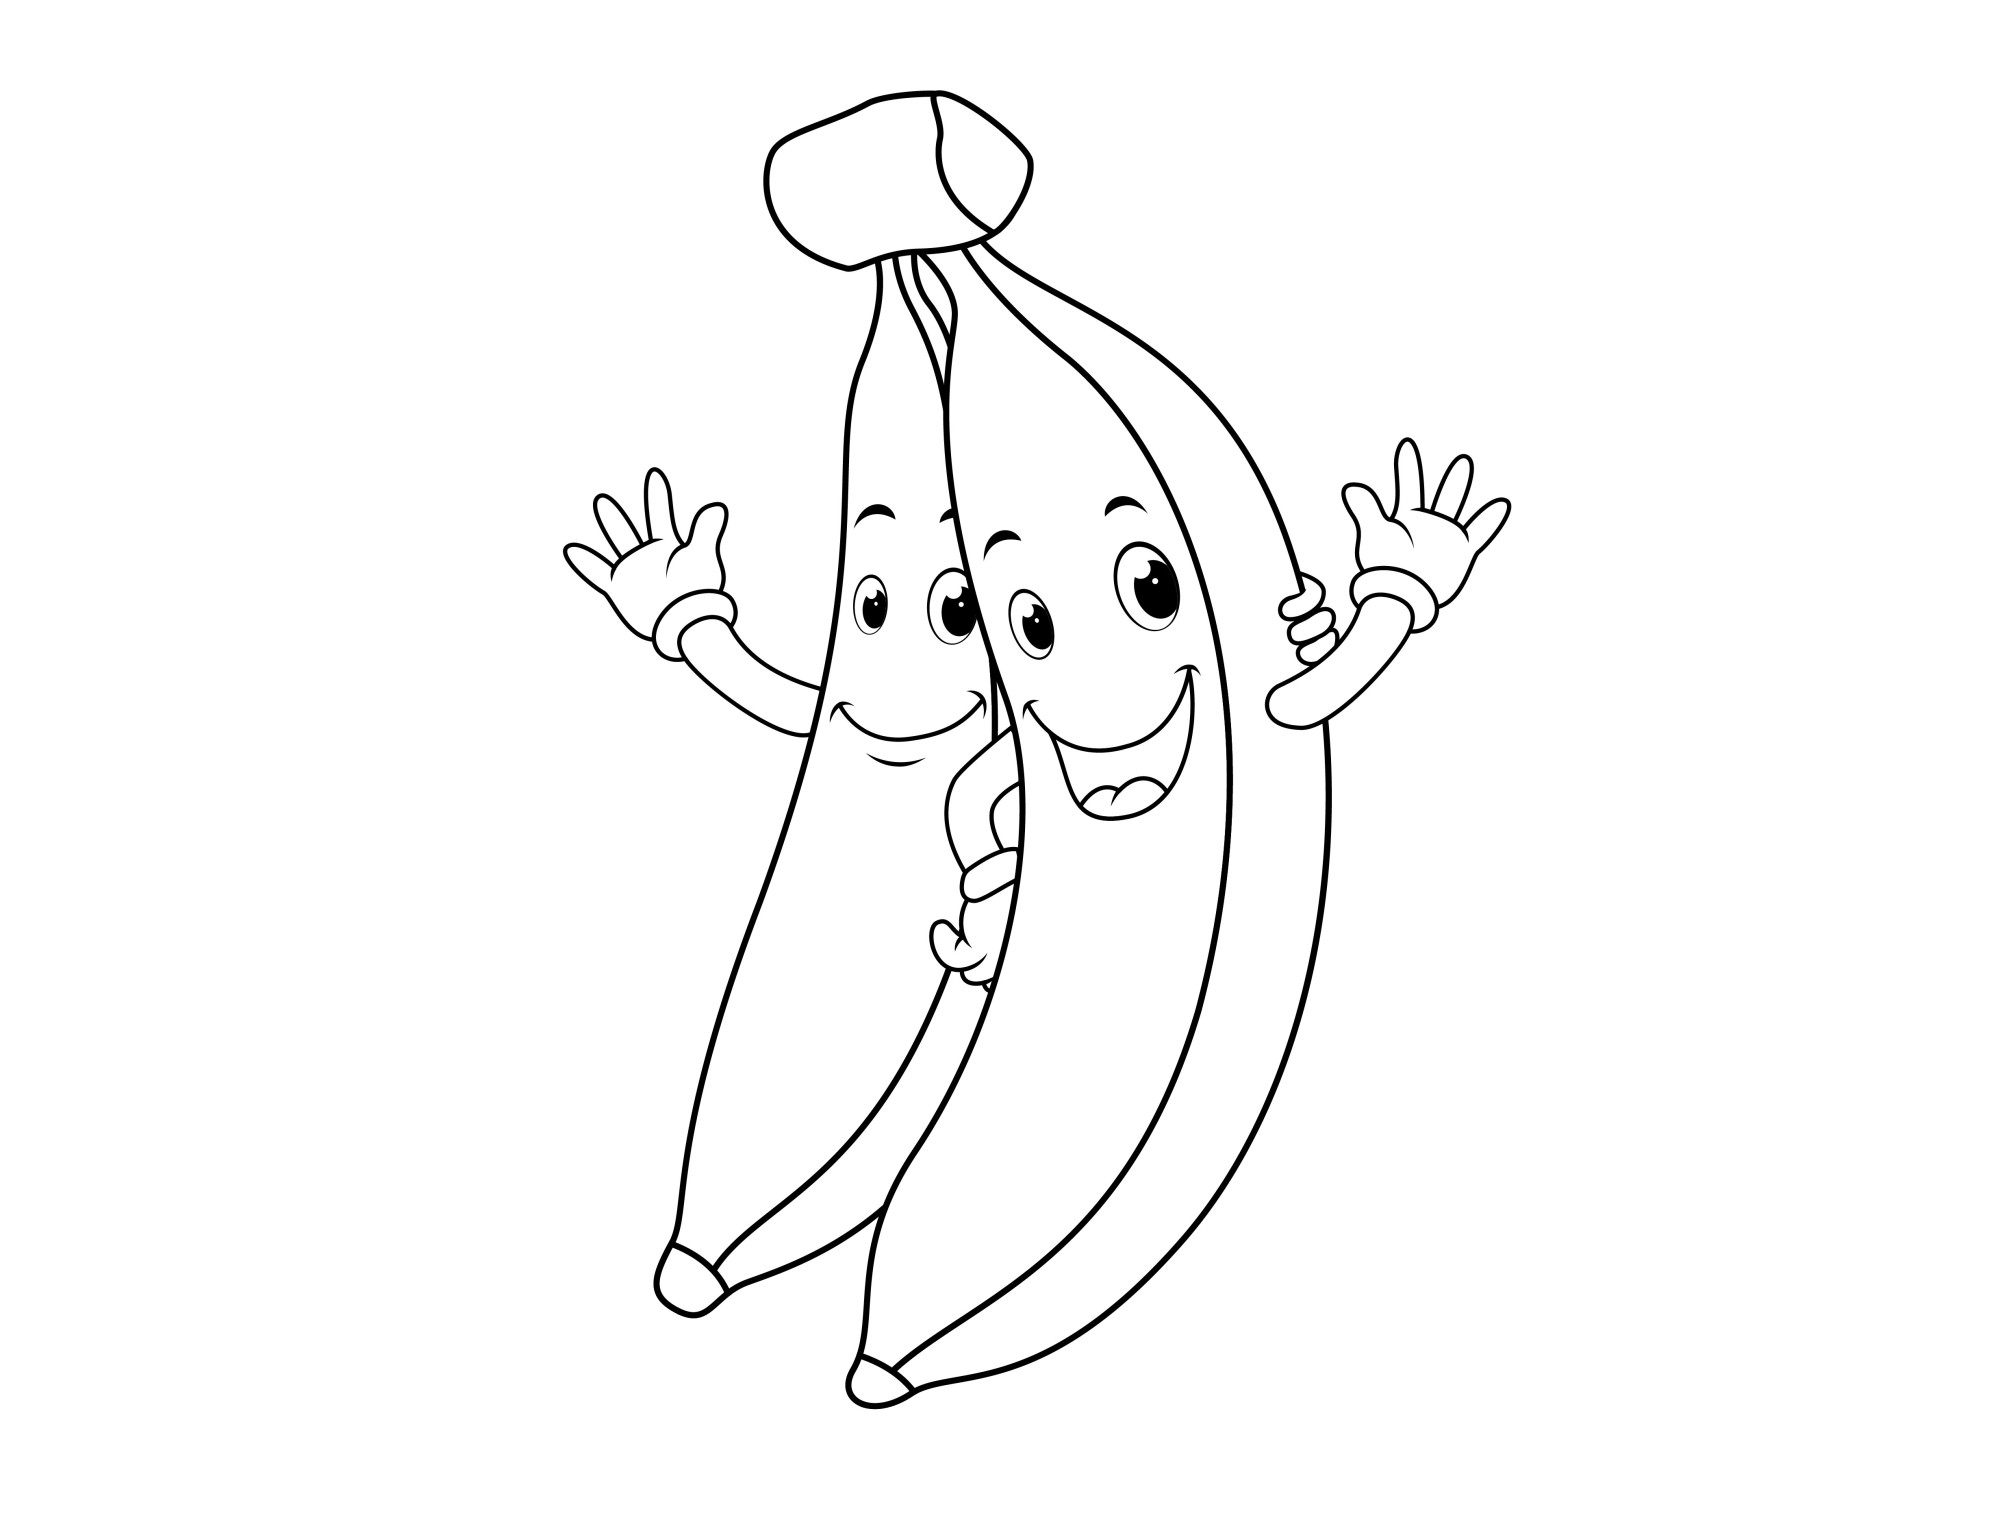 Раскраска для детей: два банана с лицами машут руками